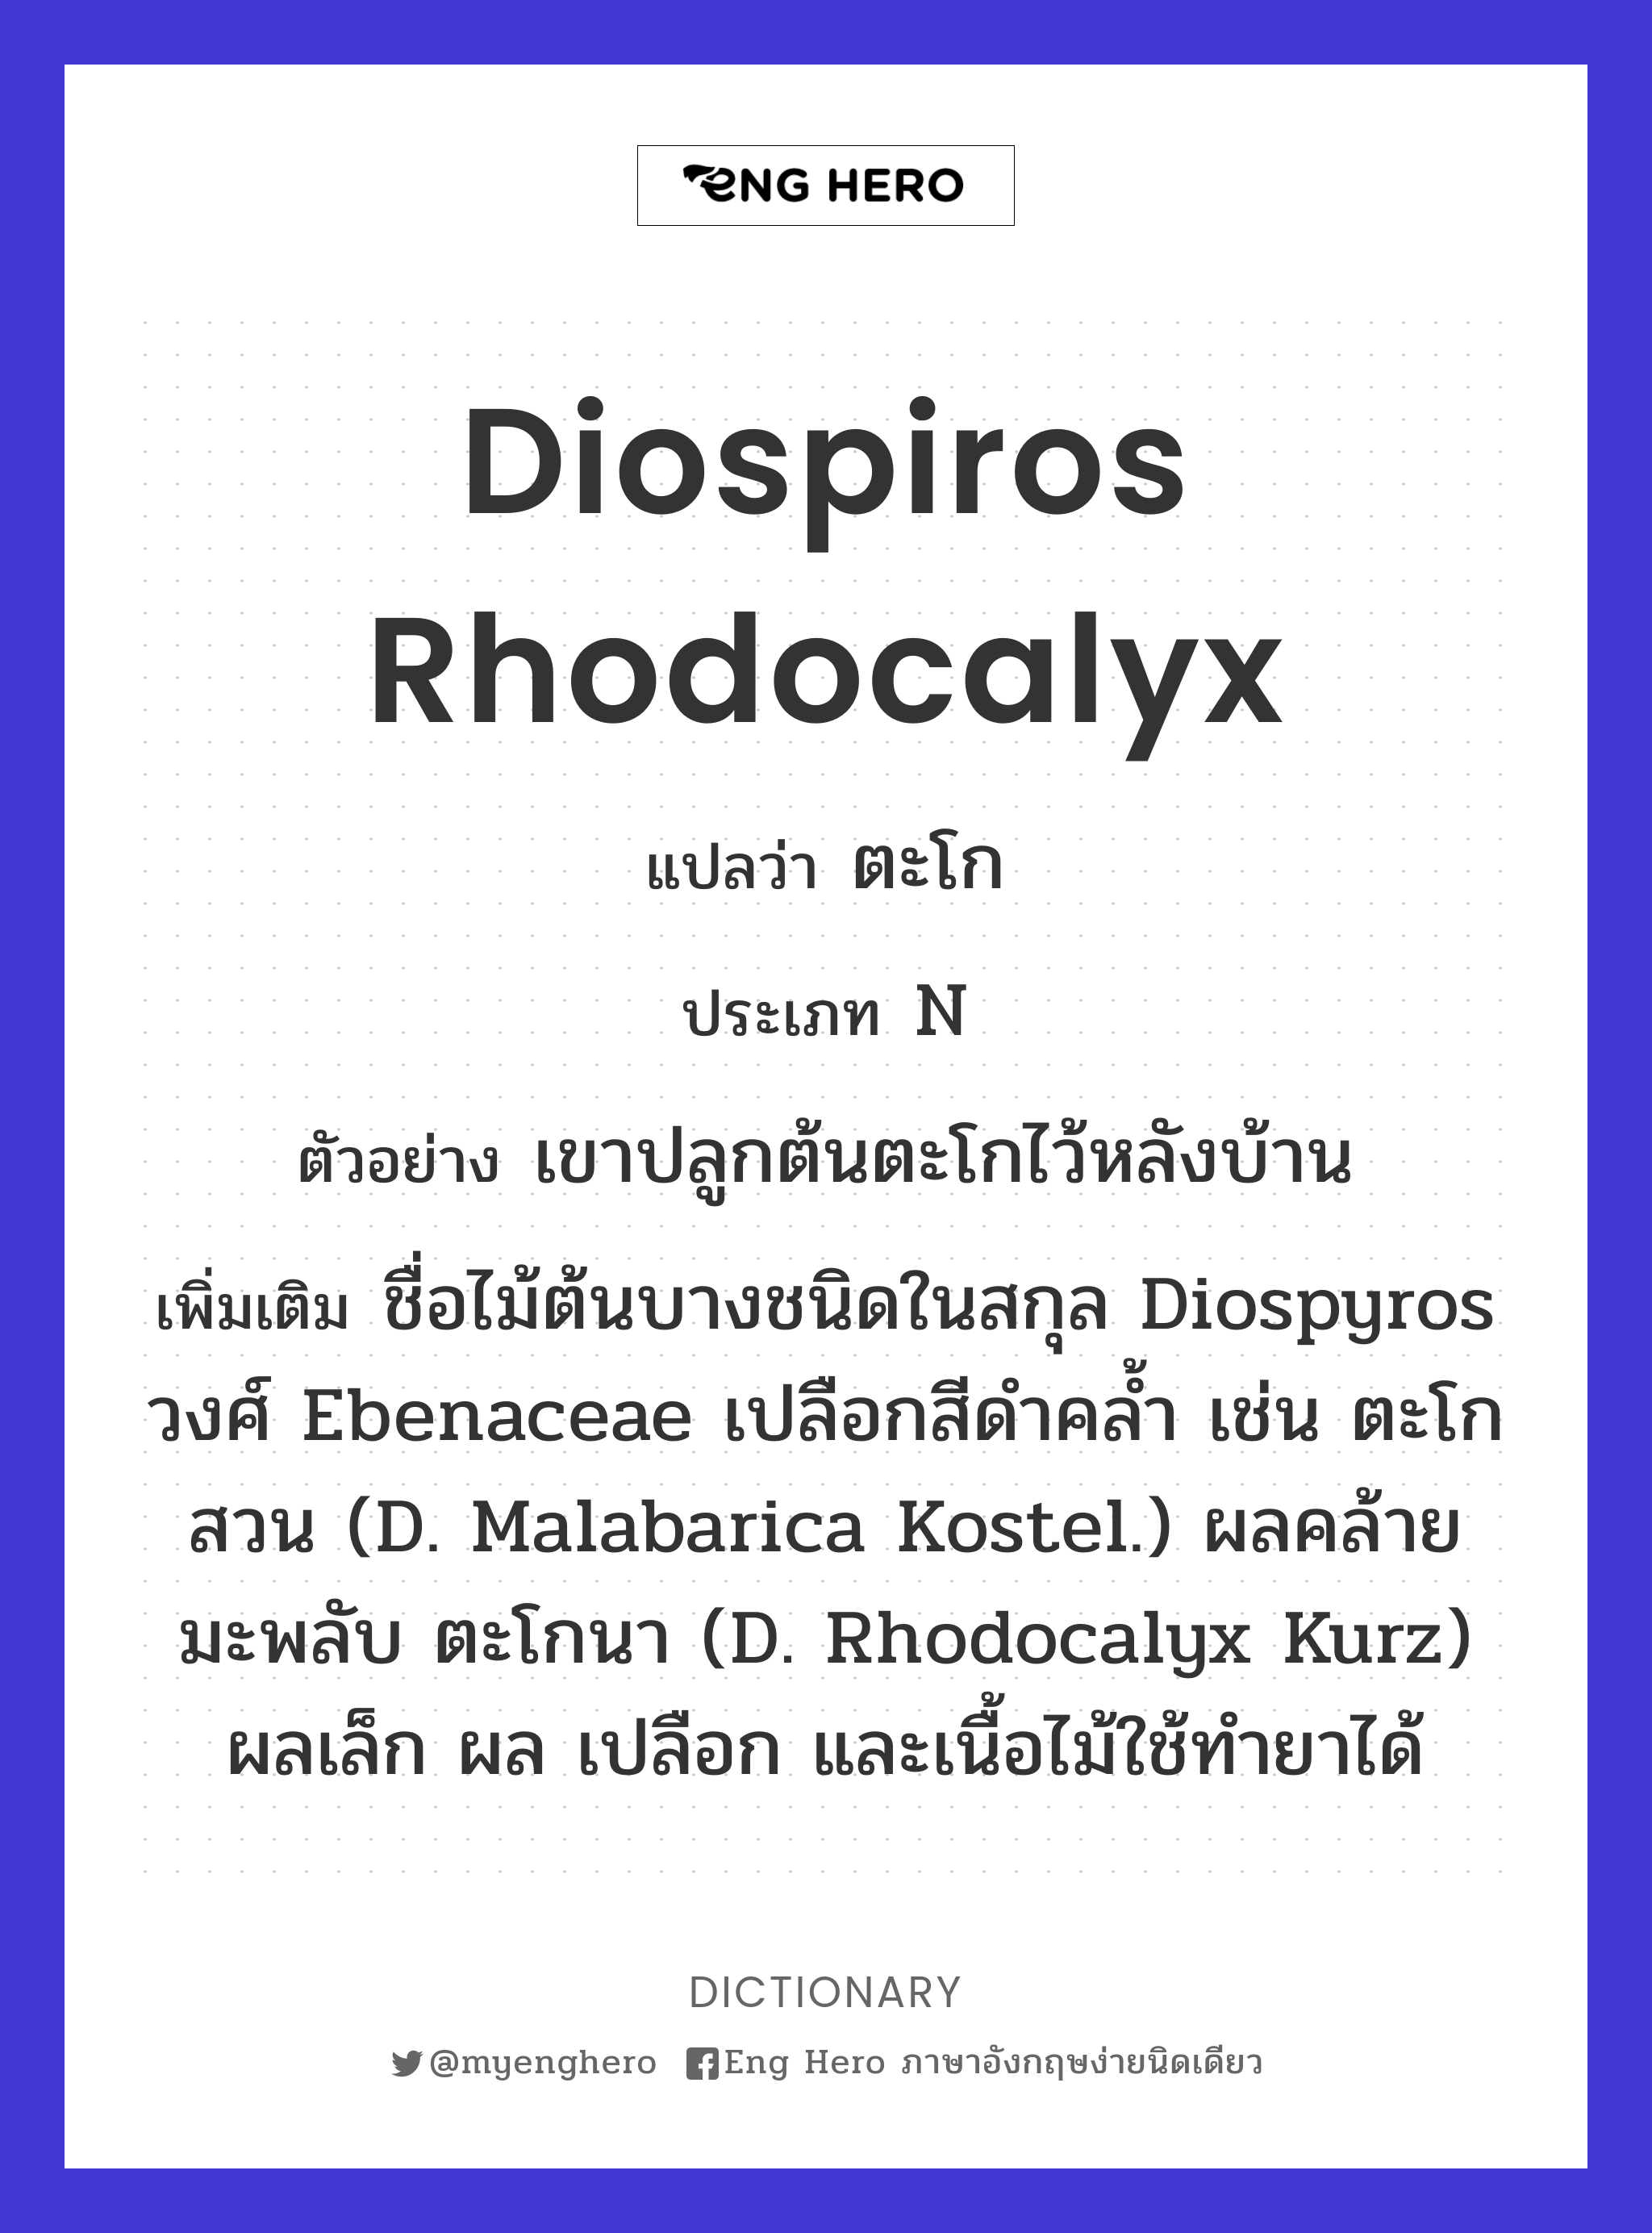 Diospiros rhodocalyx